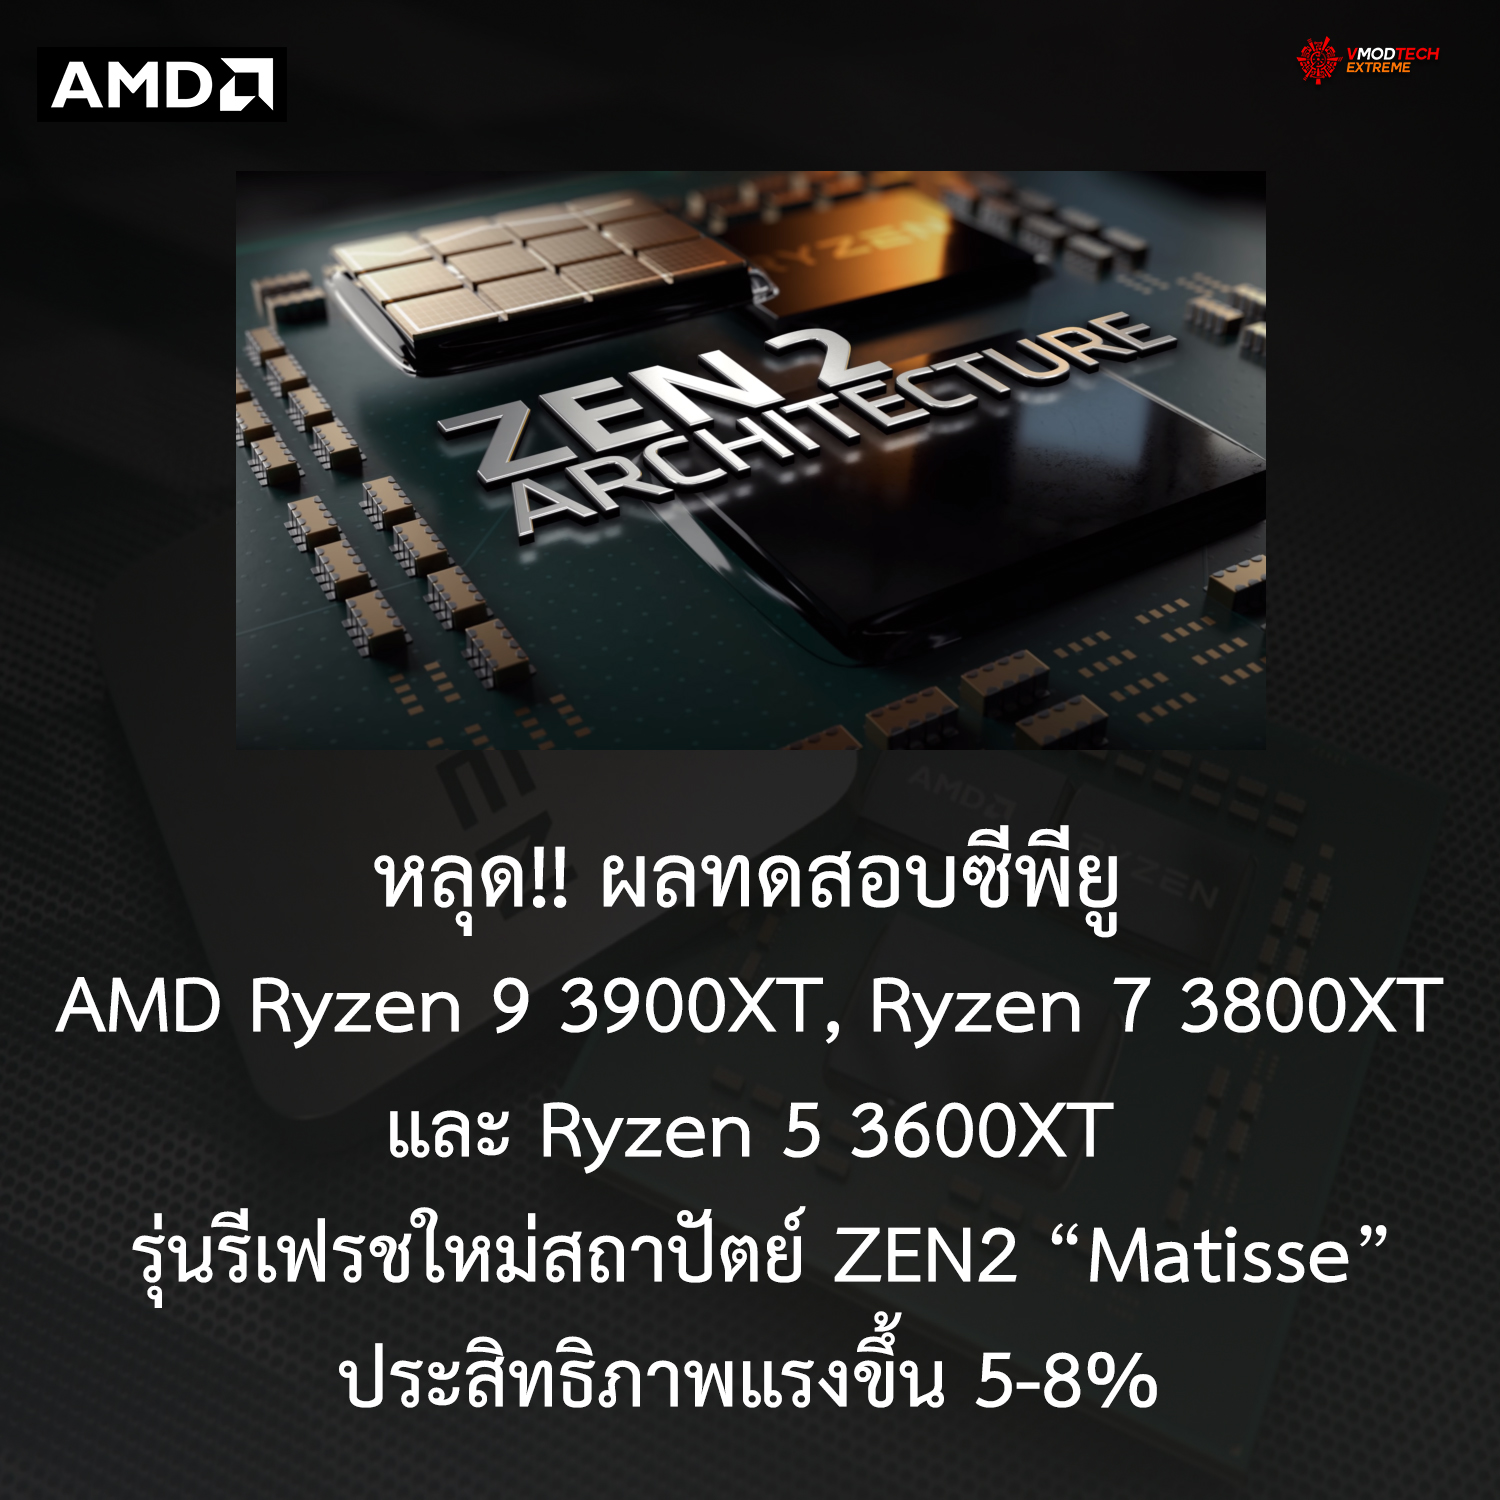 หลุด!! ผลทดสอบซีพียู AMD Ryzen 9 3900XT, Ryzen 7 3800XT และ Ryzen 5 3600XT รุ่นรีเฟรชใหม่อย่างไม่เป็นทางการ